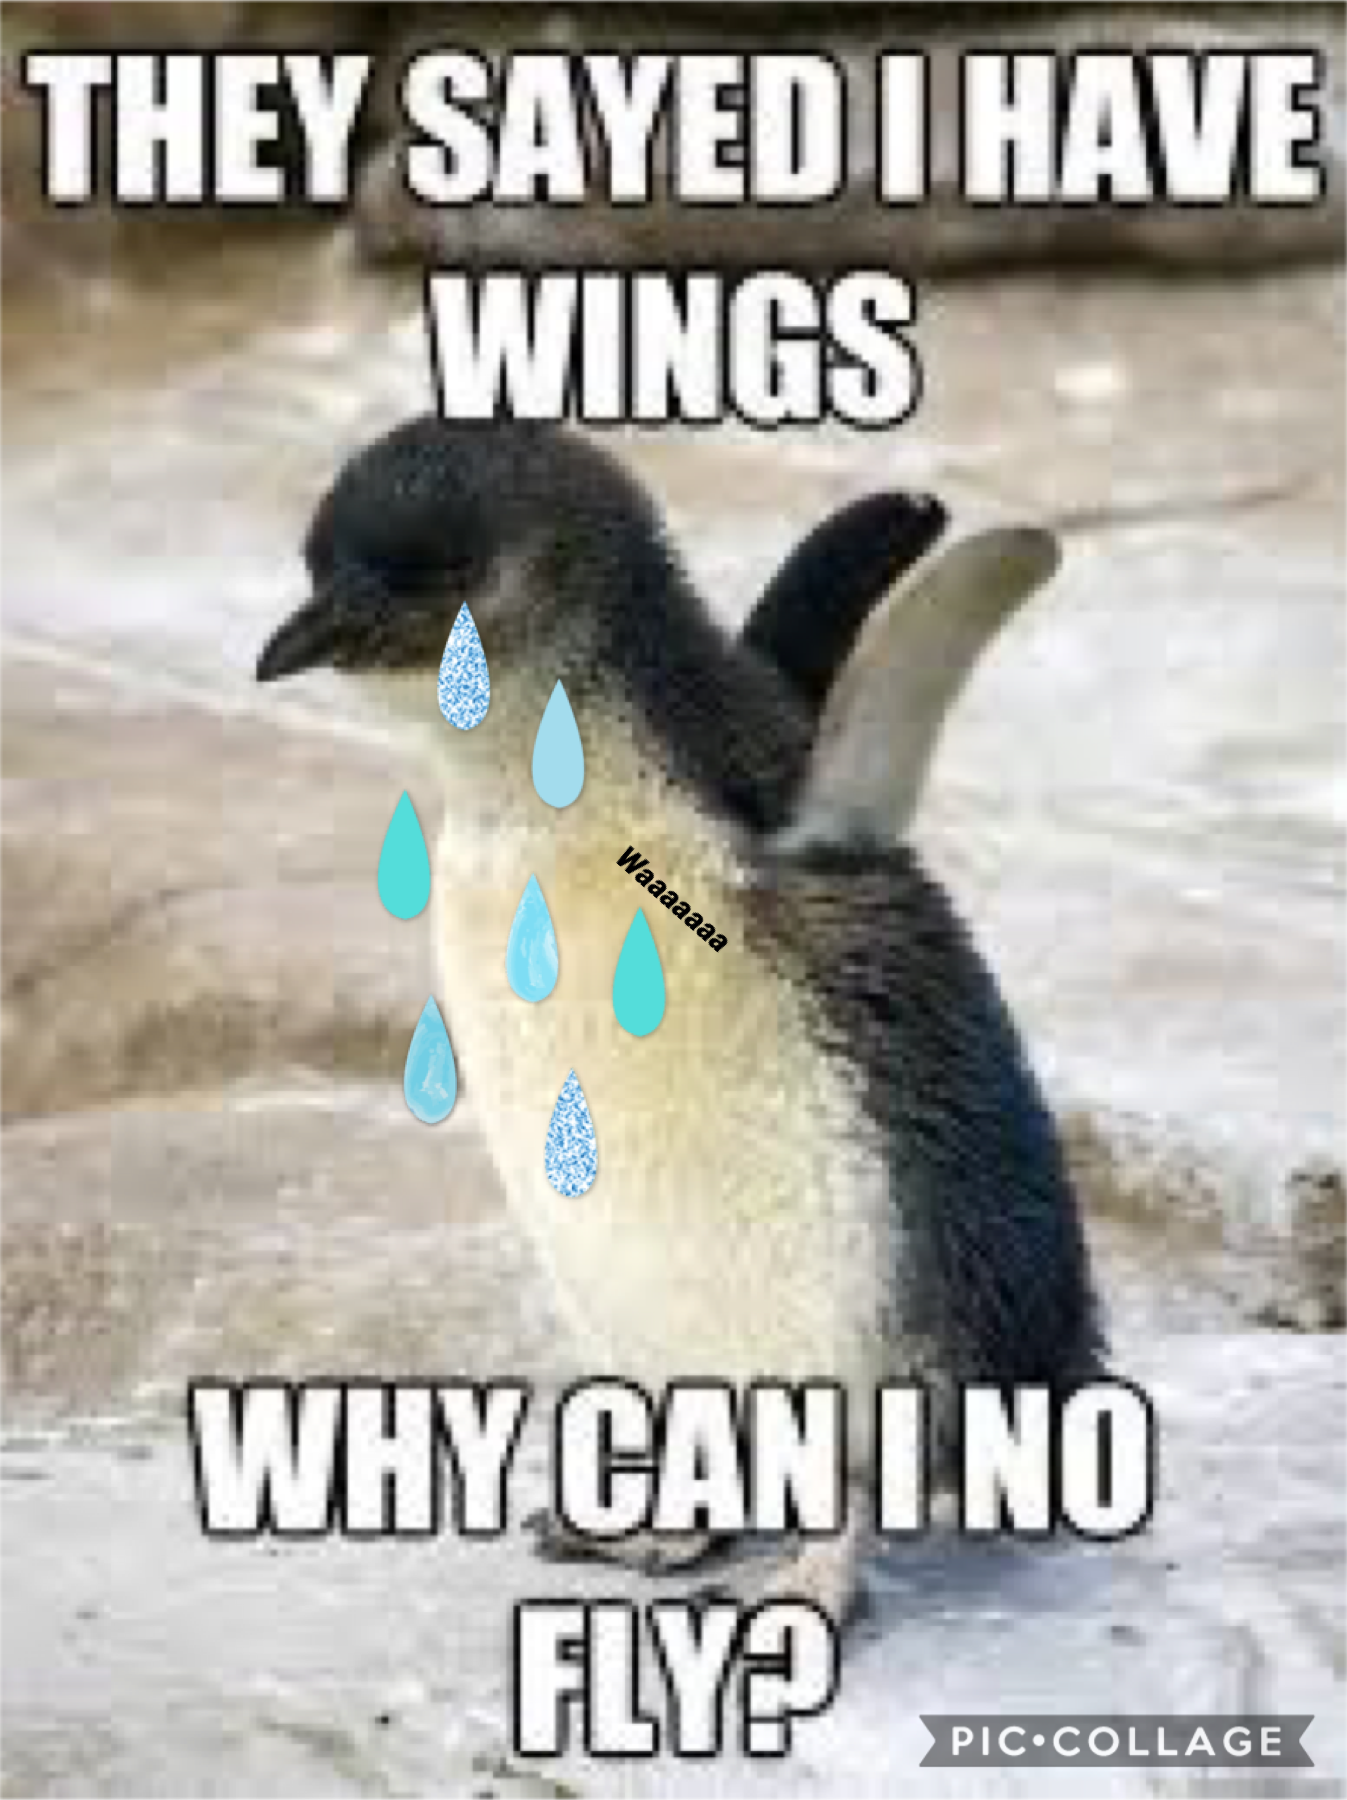 Awww poor penguin